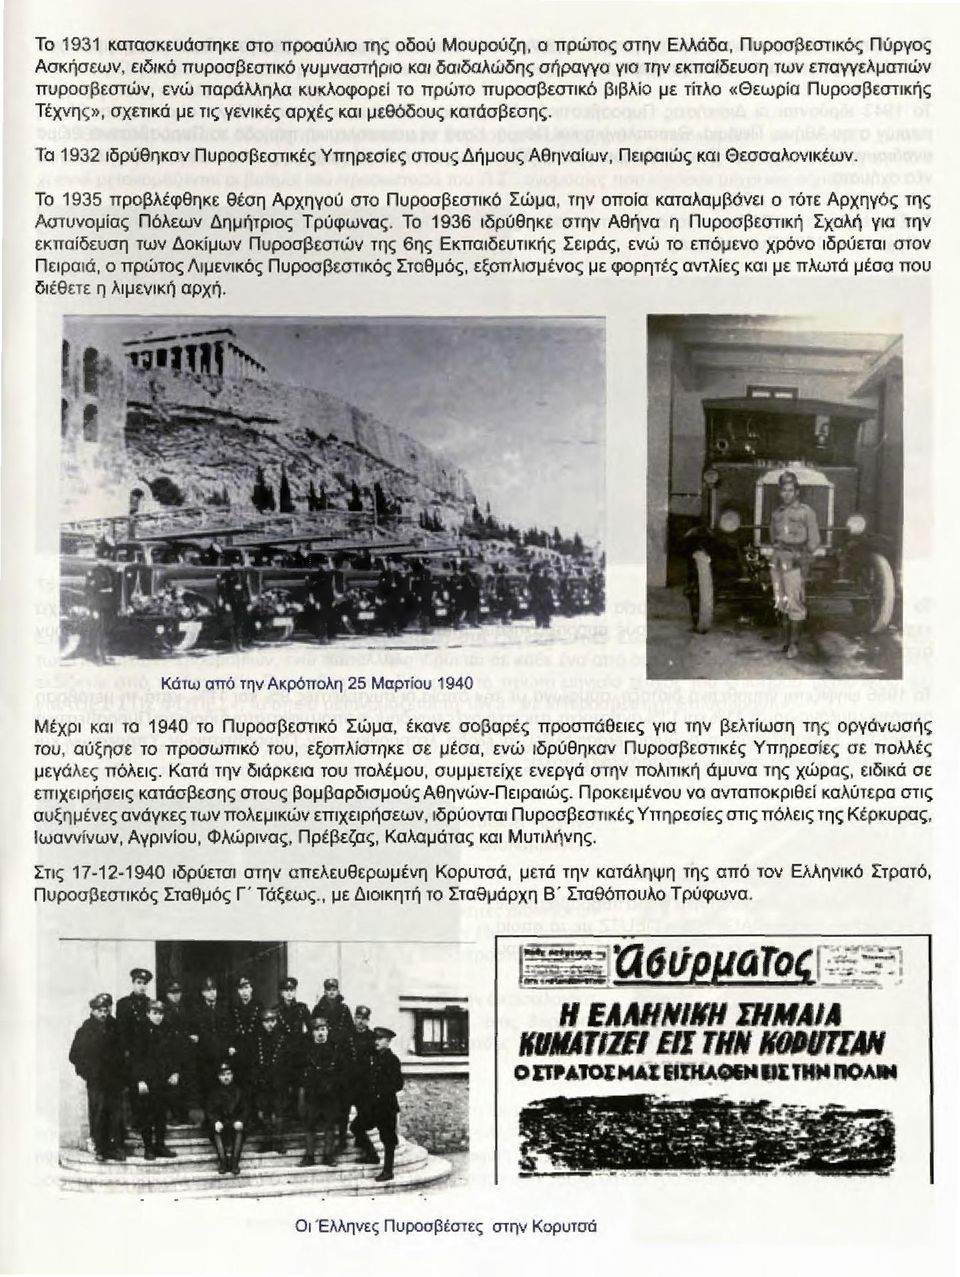 Το 1932 ιδρύθηκαν Πυροσβεστικές Υπηρεσίες στους Δήμους Αθηναίων, Πειρα ι ώς και Θεσσαλονικέων.